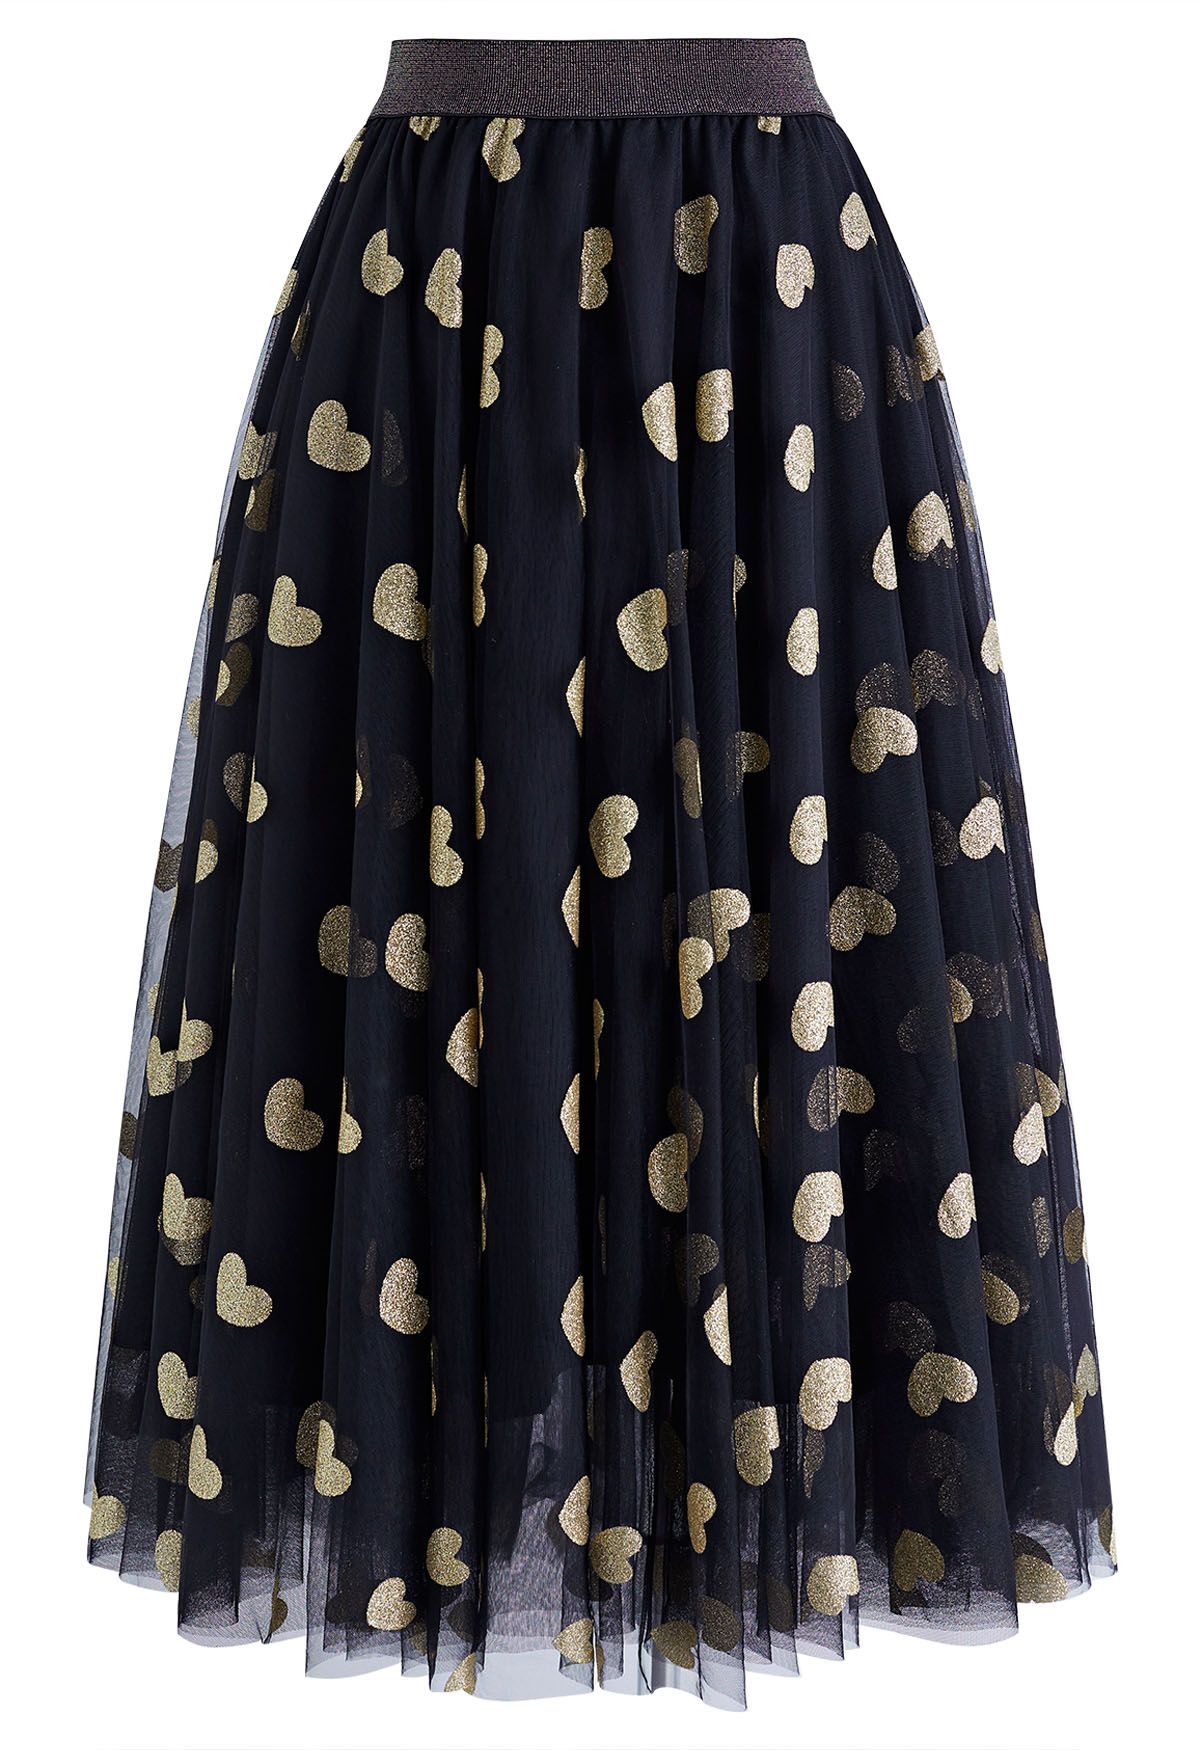 Shimmering Hearts Mesh Tulle Midi Skirt in Black